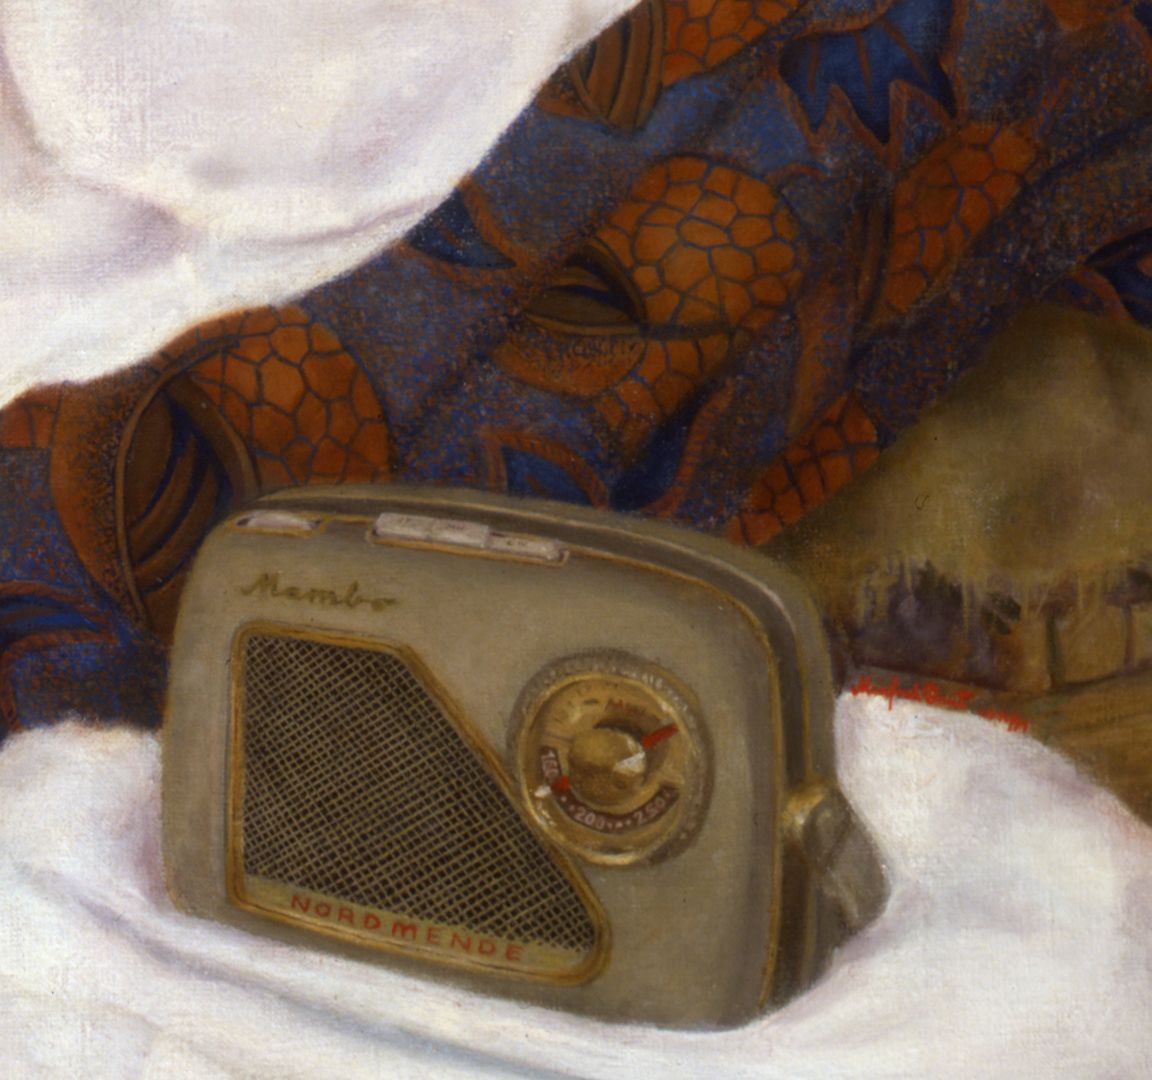 Der Kunststudent H.S. Detail, Radio Mambo, untere Bildhälfte